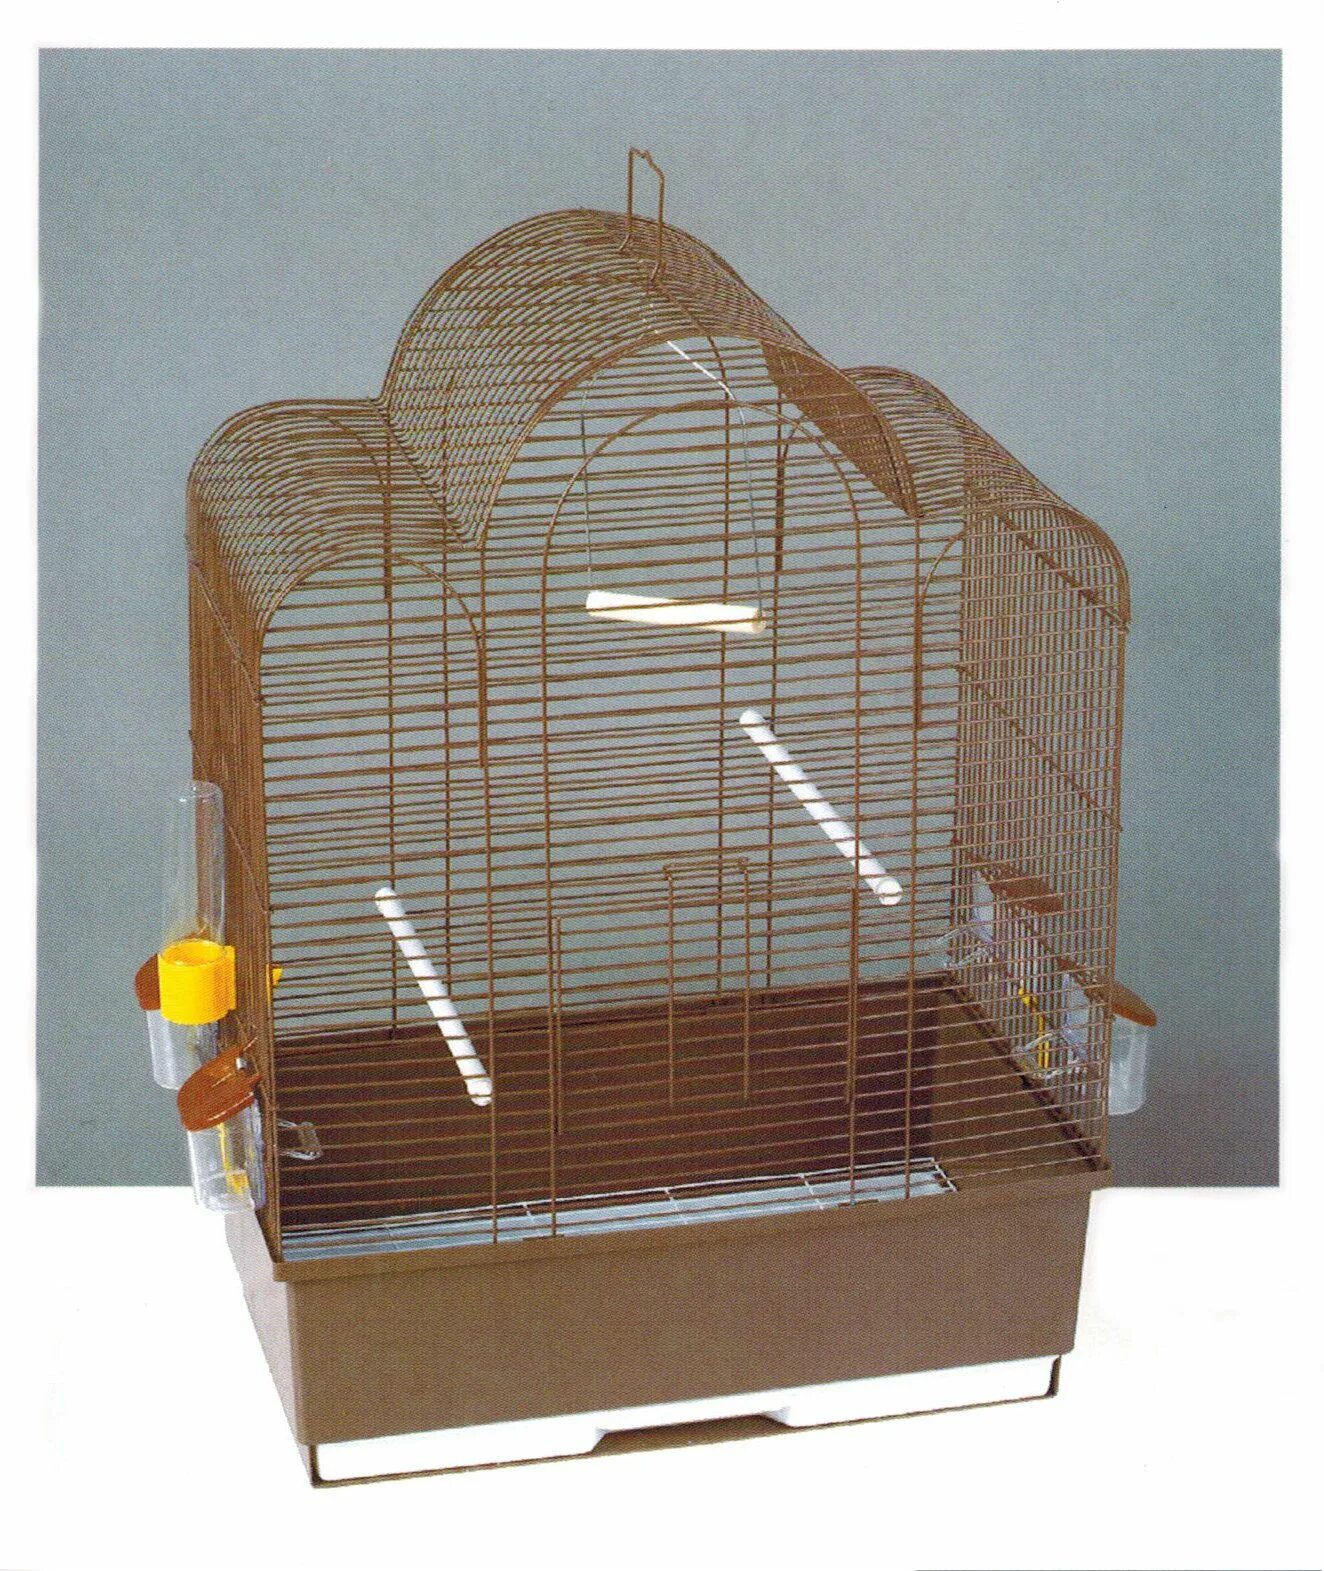 Клетка для птиц Tesoro в3121 37 х 28 х 48 см. Petmax клетка для птиц 61,2x45,2x82см. Tesoro e44 клетка. Клетка Тесоро для птиц. Авито клетки для птиц